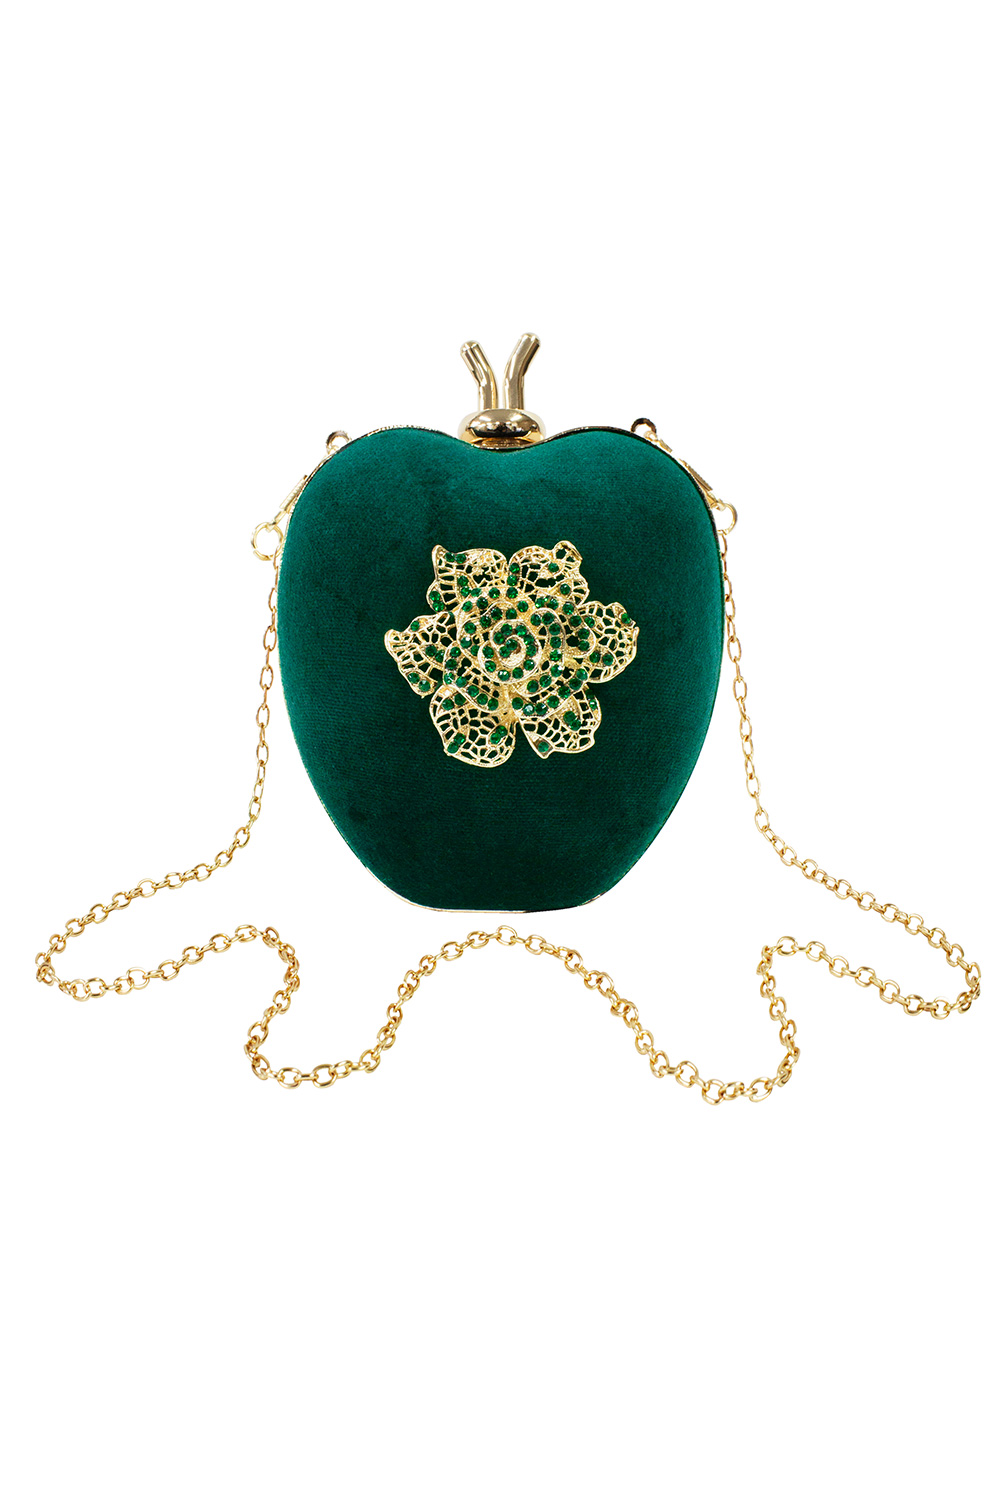 Emerald Green Heart Clutch Bag